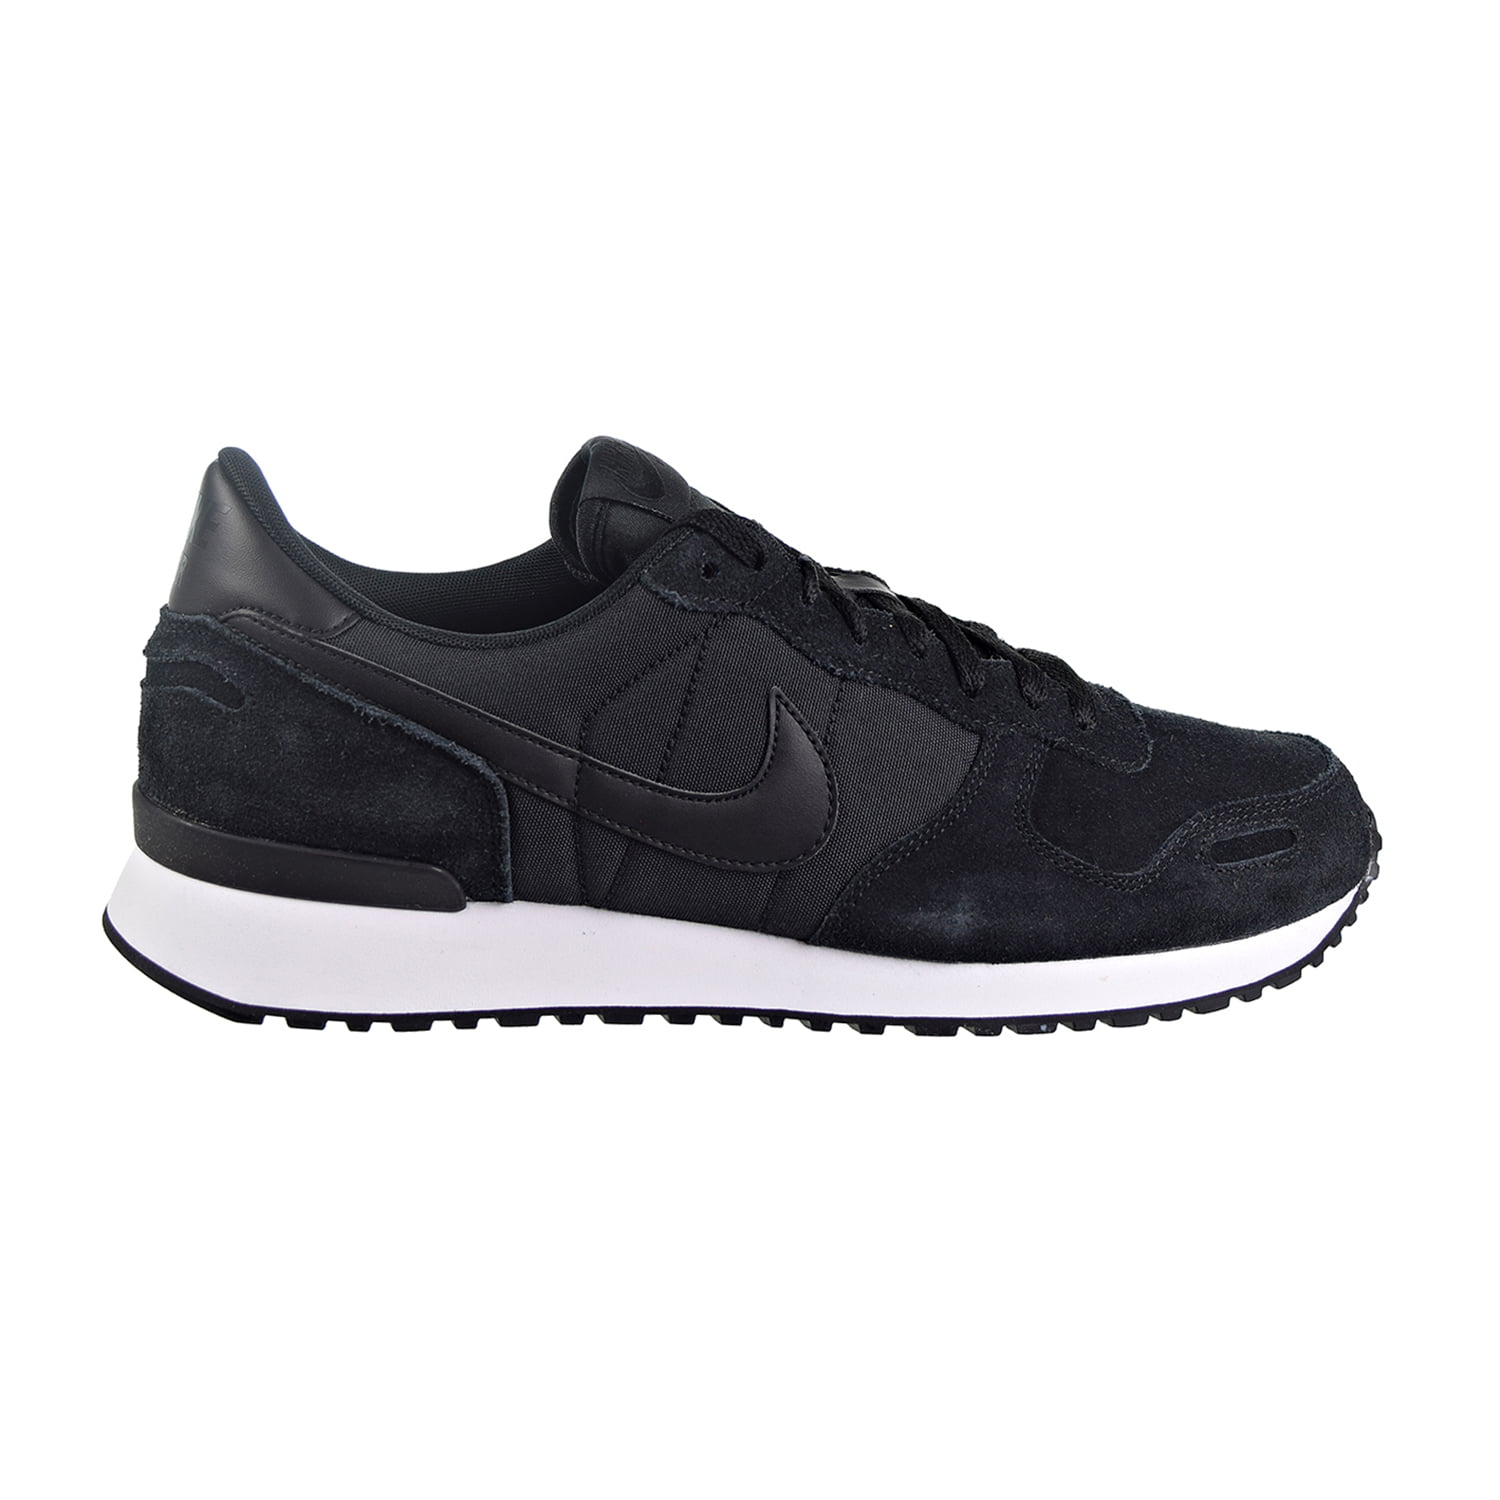 Niet verwacht Toevlucht Echter Nike Air Vortex Leather Men's Shoes Black/White 918206-001 - Walmart.com